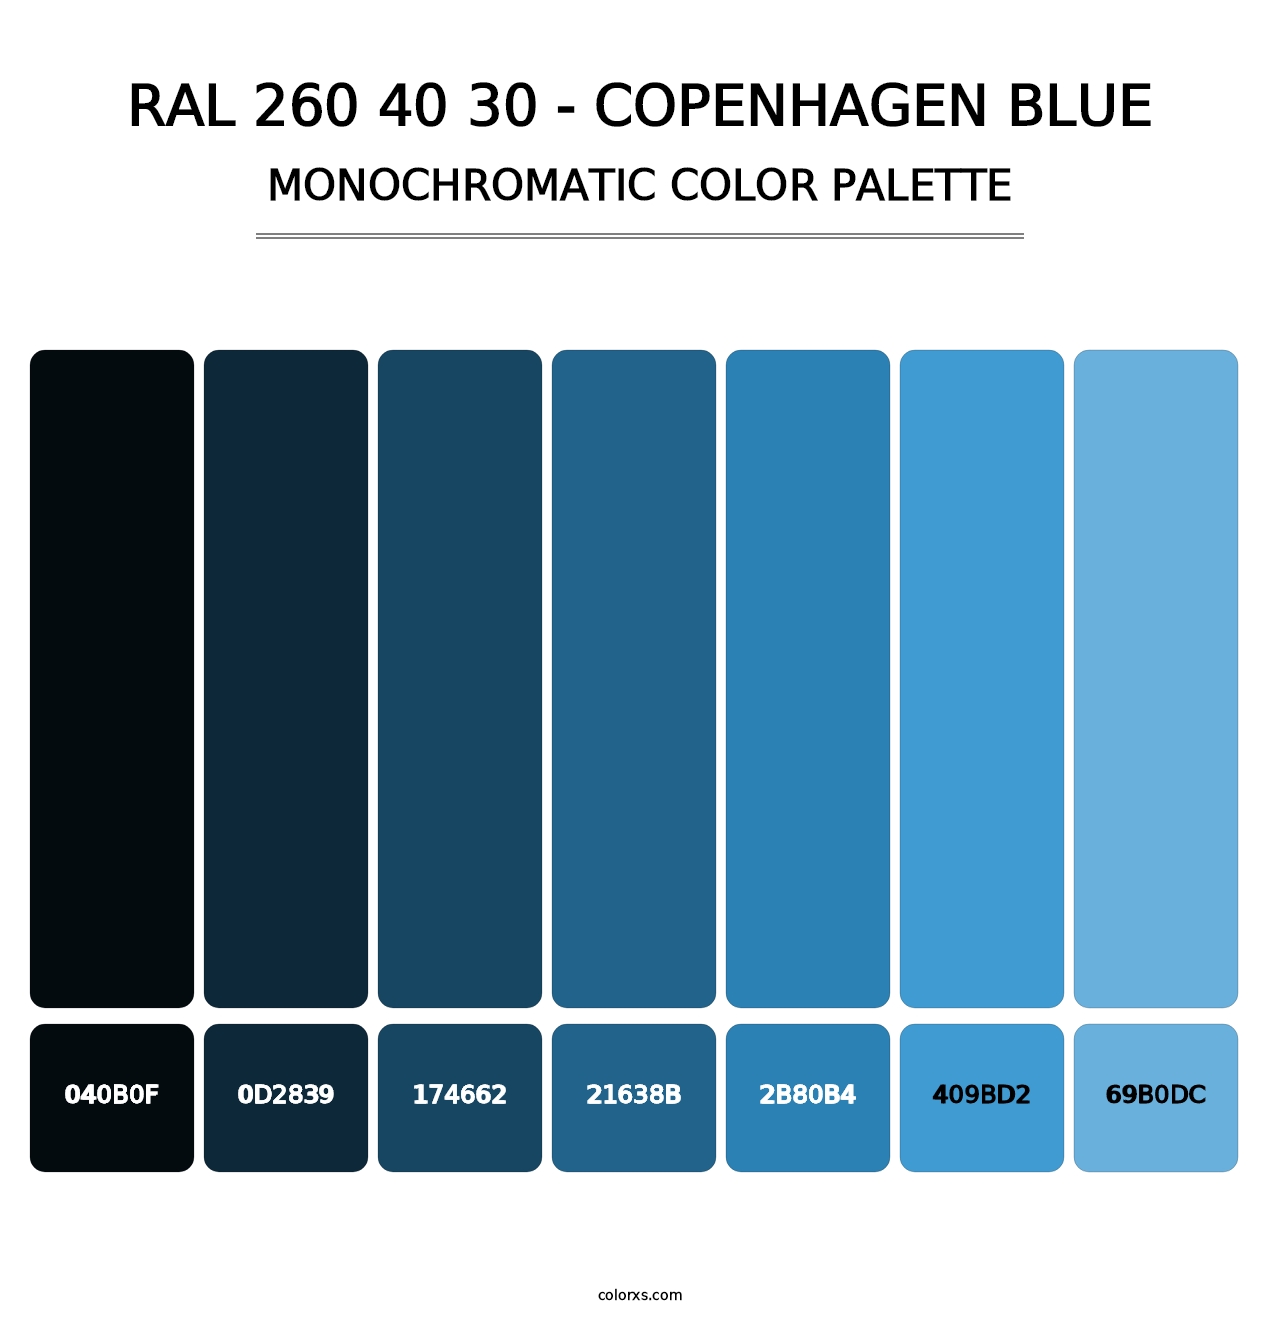 RAL 260 40 30 - Copenhagen Blue - Monochromatic Color Palette